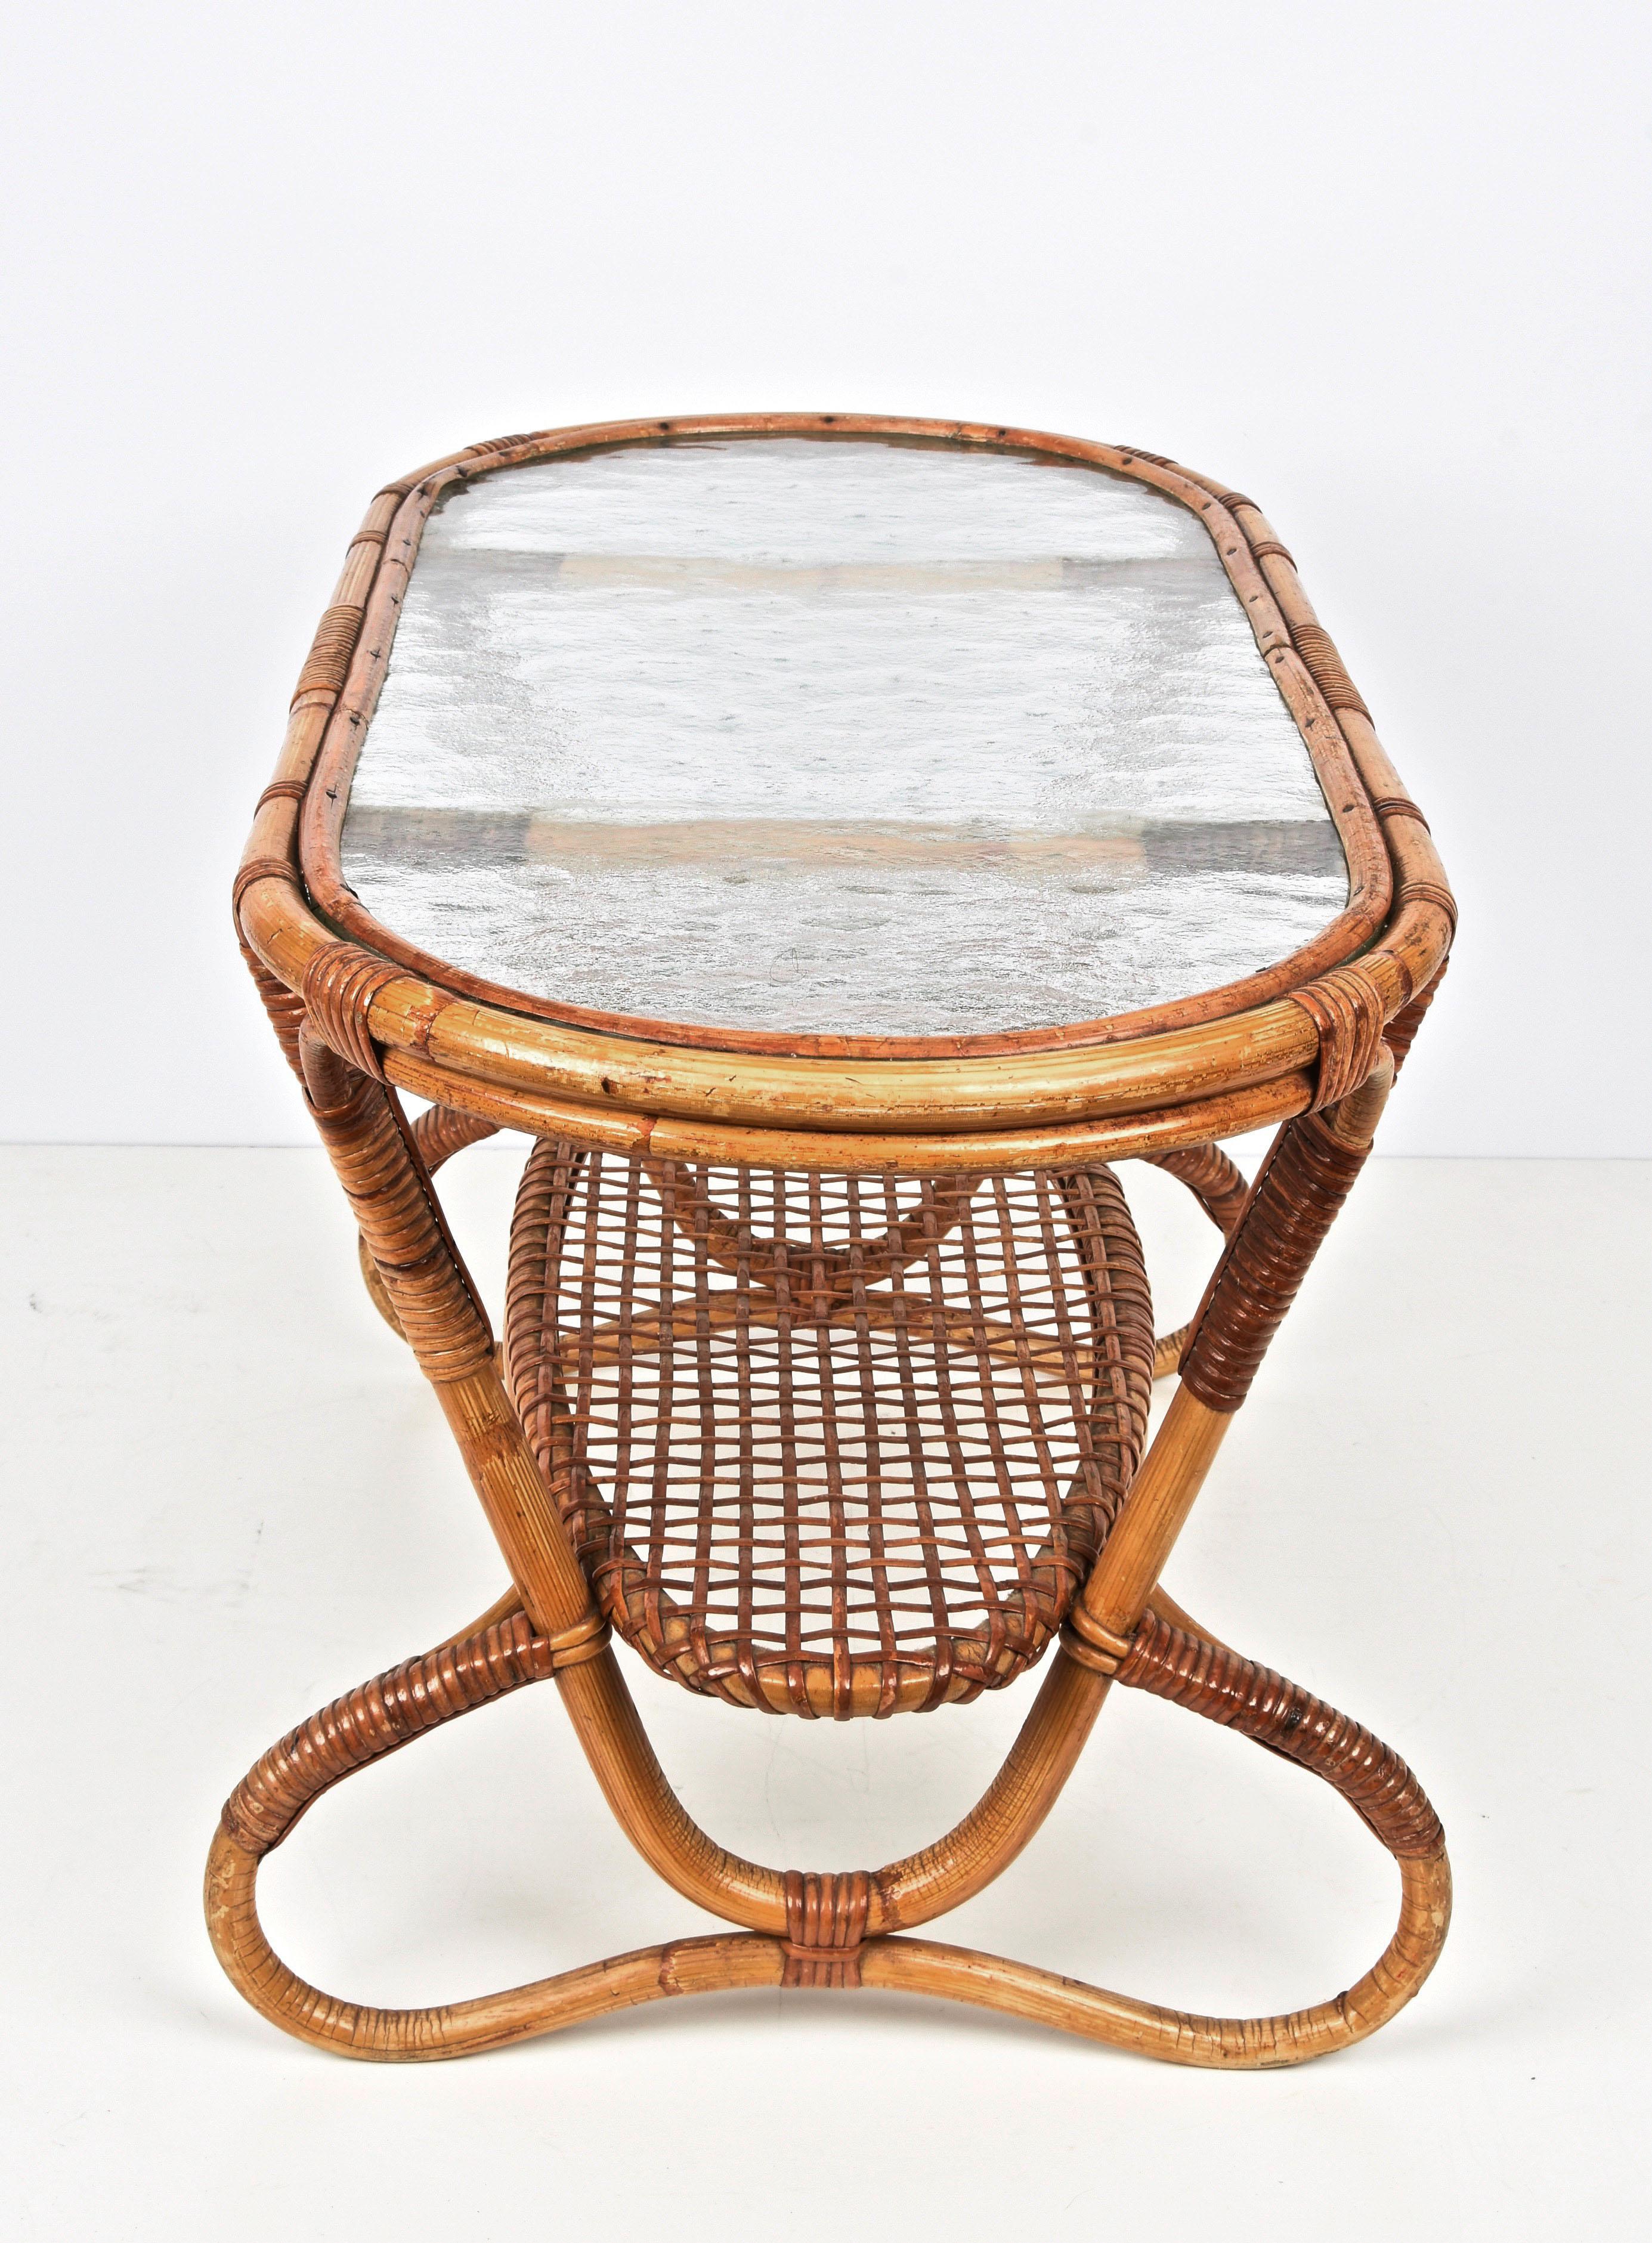 Verre Table basse hollandaise ovale en rotin et bambou avec plateau en verre, années 1950 en vente